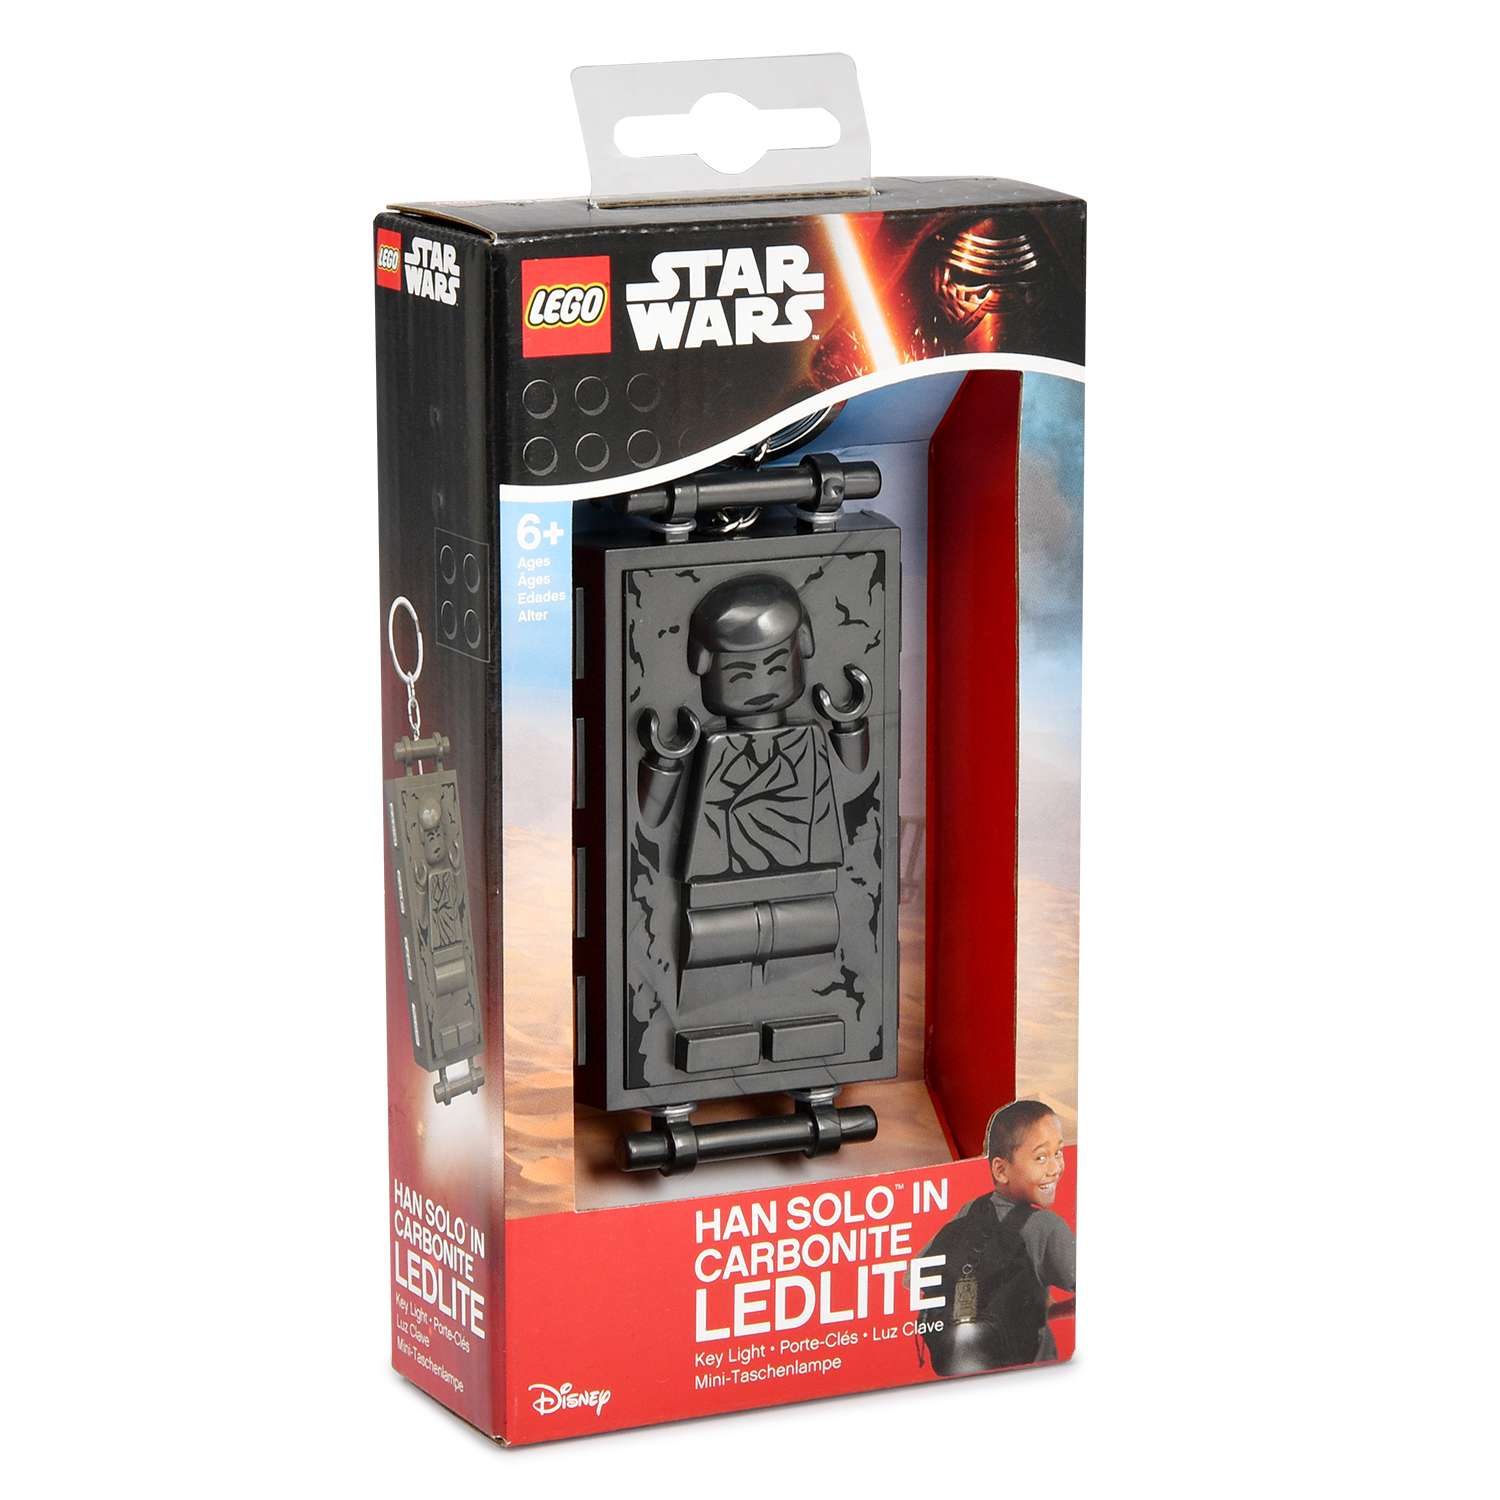 Аксессуар LEGO Star Wars Брелок-фонарик для ключей Han Solo (Хан Соло) в карбоните LGL-KE72 - фото 2